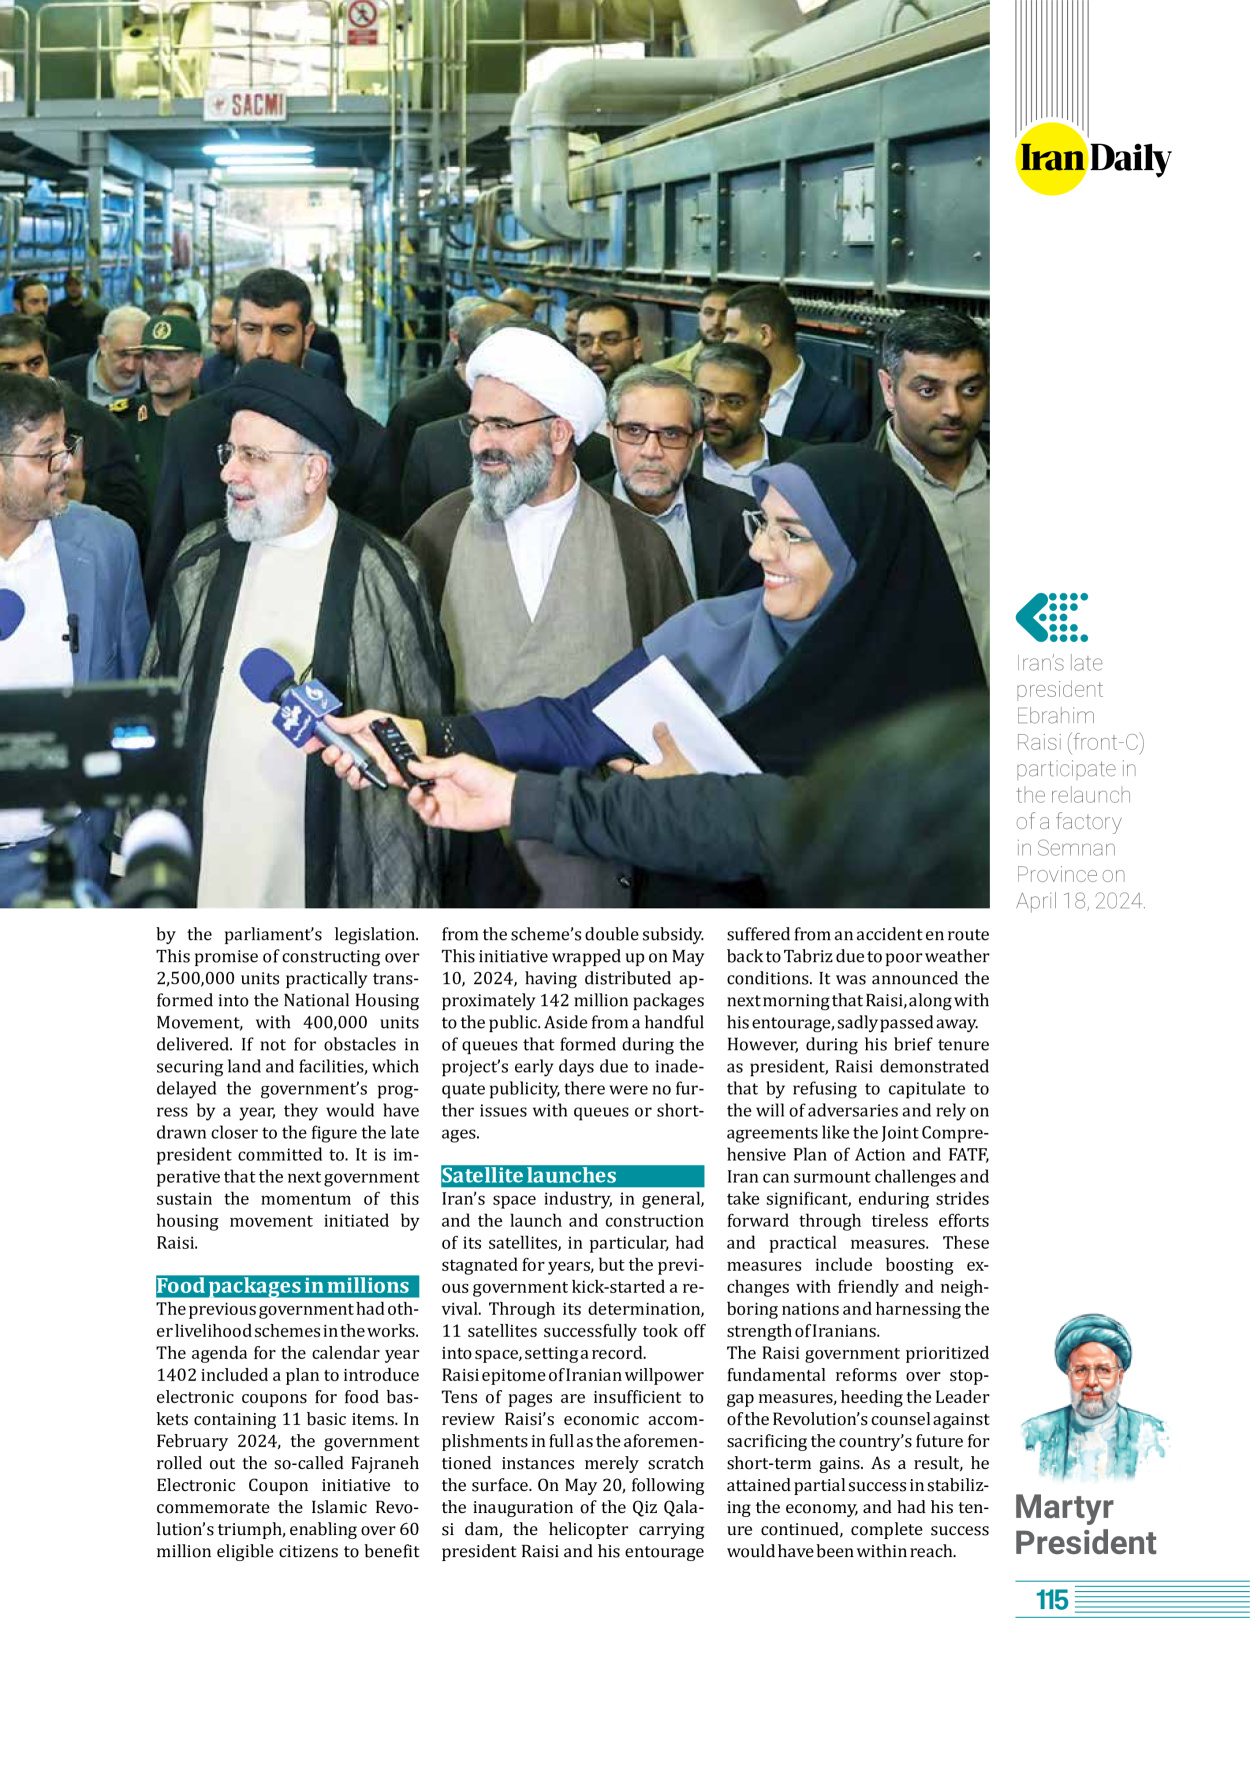 روزنامه ایران - ویژه نامه وِزه نامه چهلم شهید رییسی( انگلیسی) - ۱۷ تیر ۱۴۰۳ - صفحه ۱۱۵